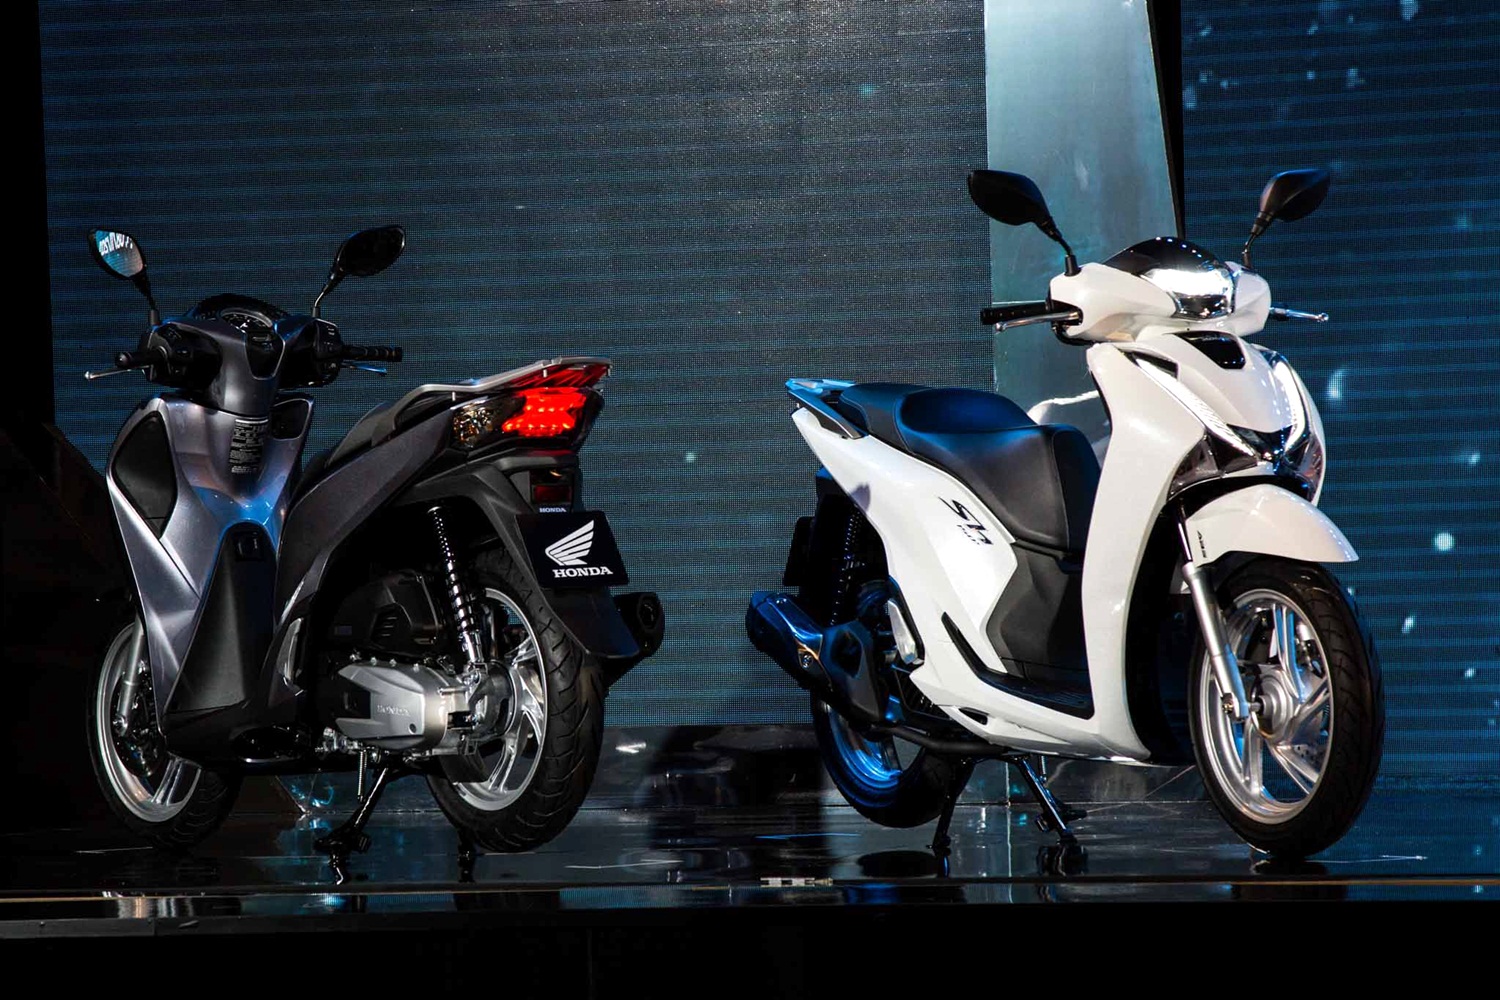 Kinh doanh xe máy Honda ở Việt Nam: Người bán có đang "bóp cổ" người mua?